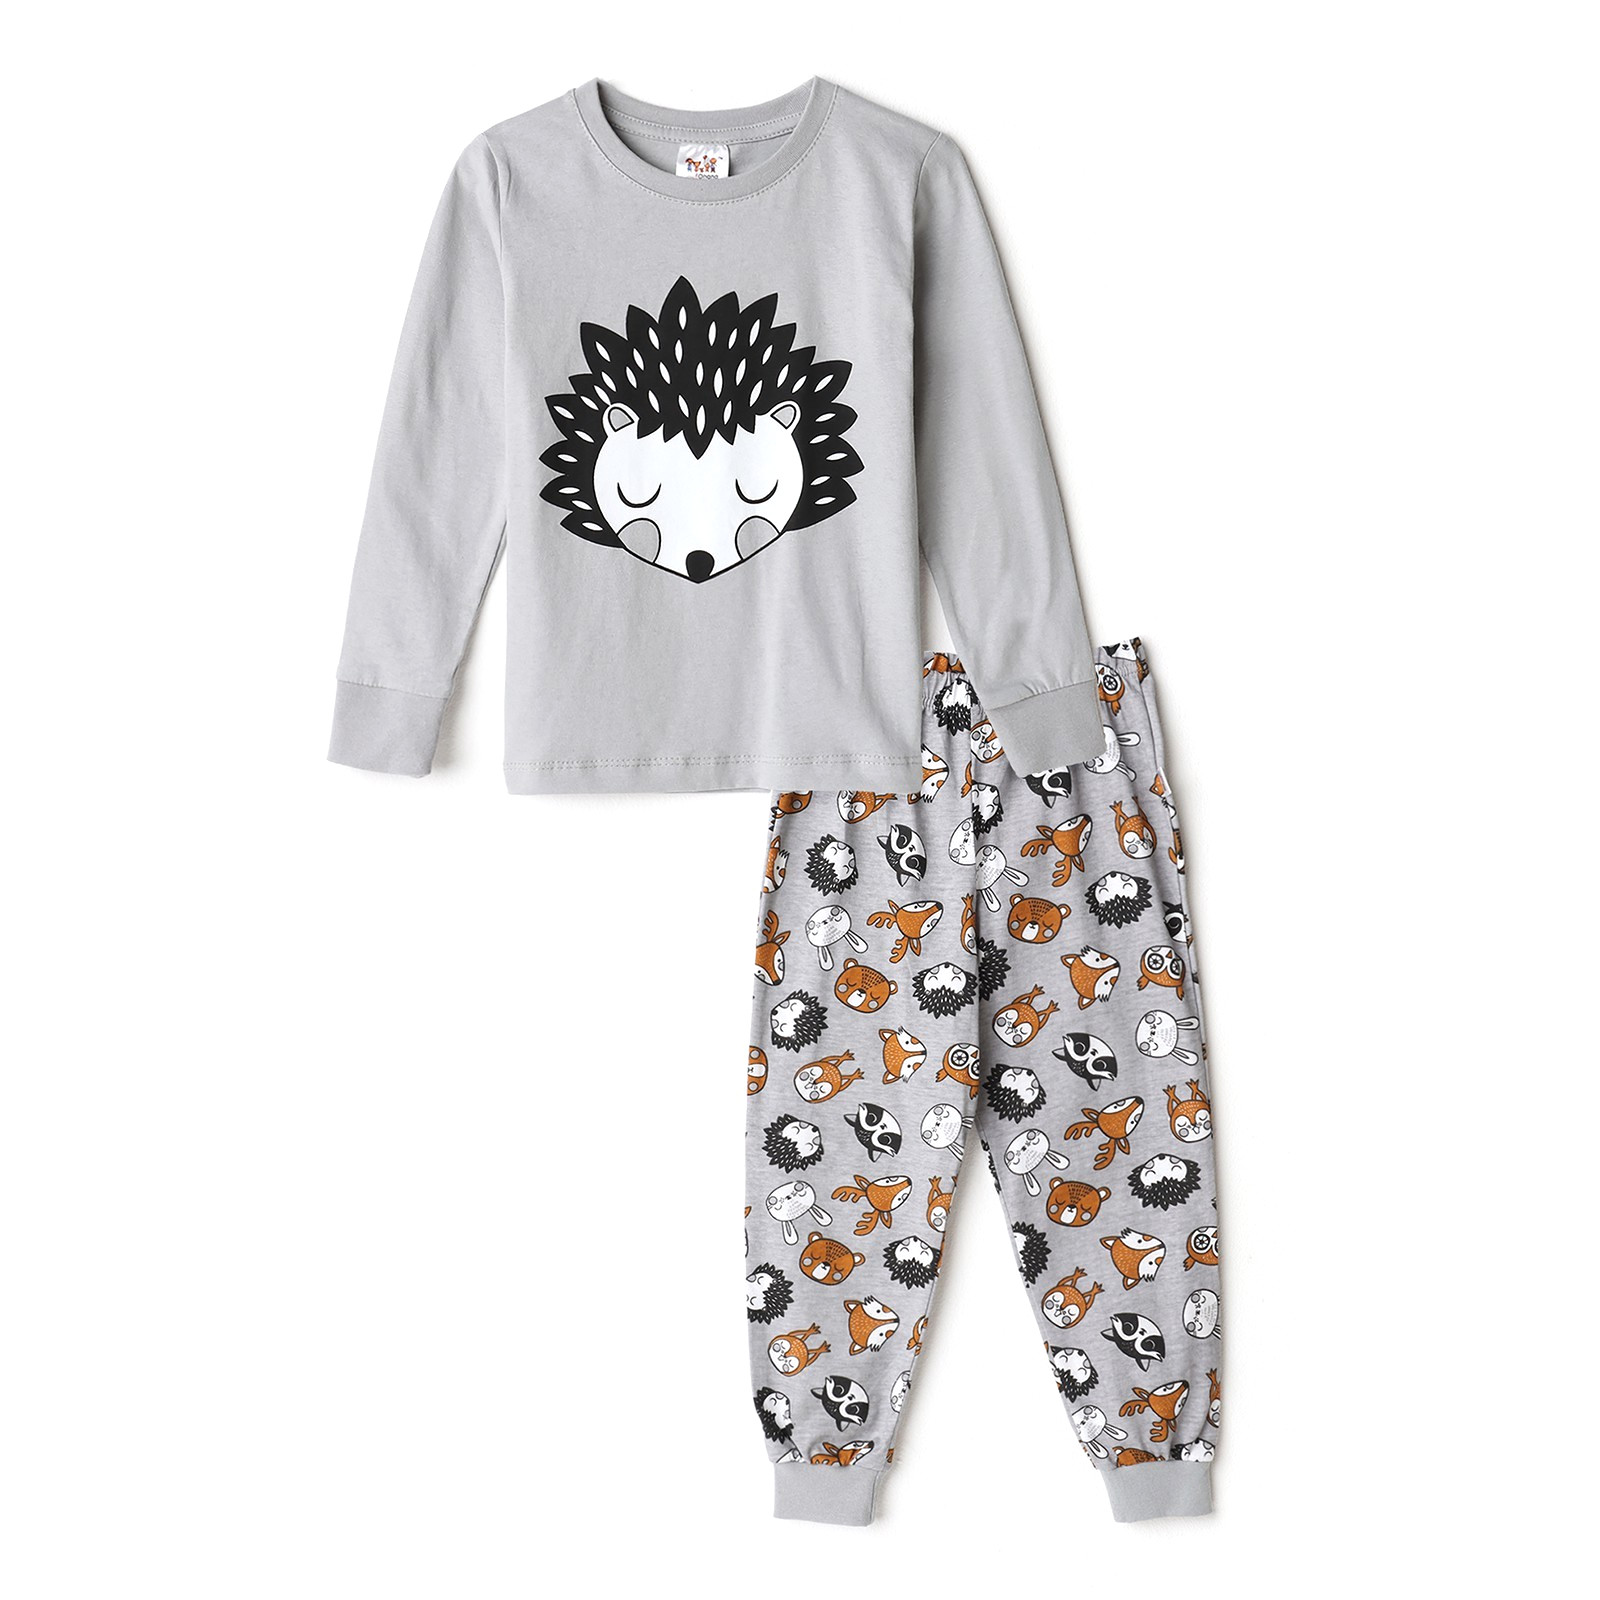 Пижама для мальчика (лонгслив/штанишки), цвет серый/ежик, рост 110см